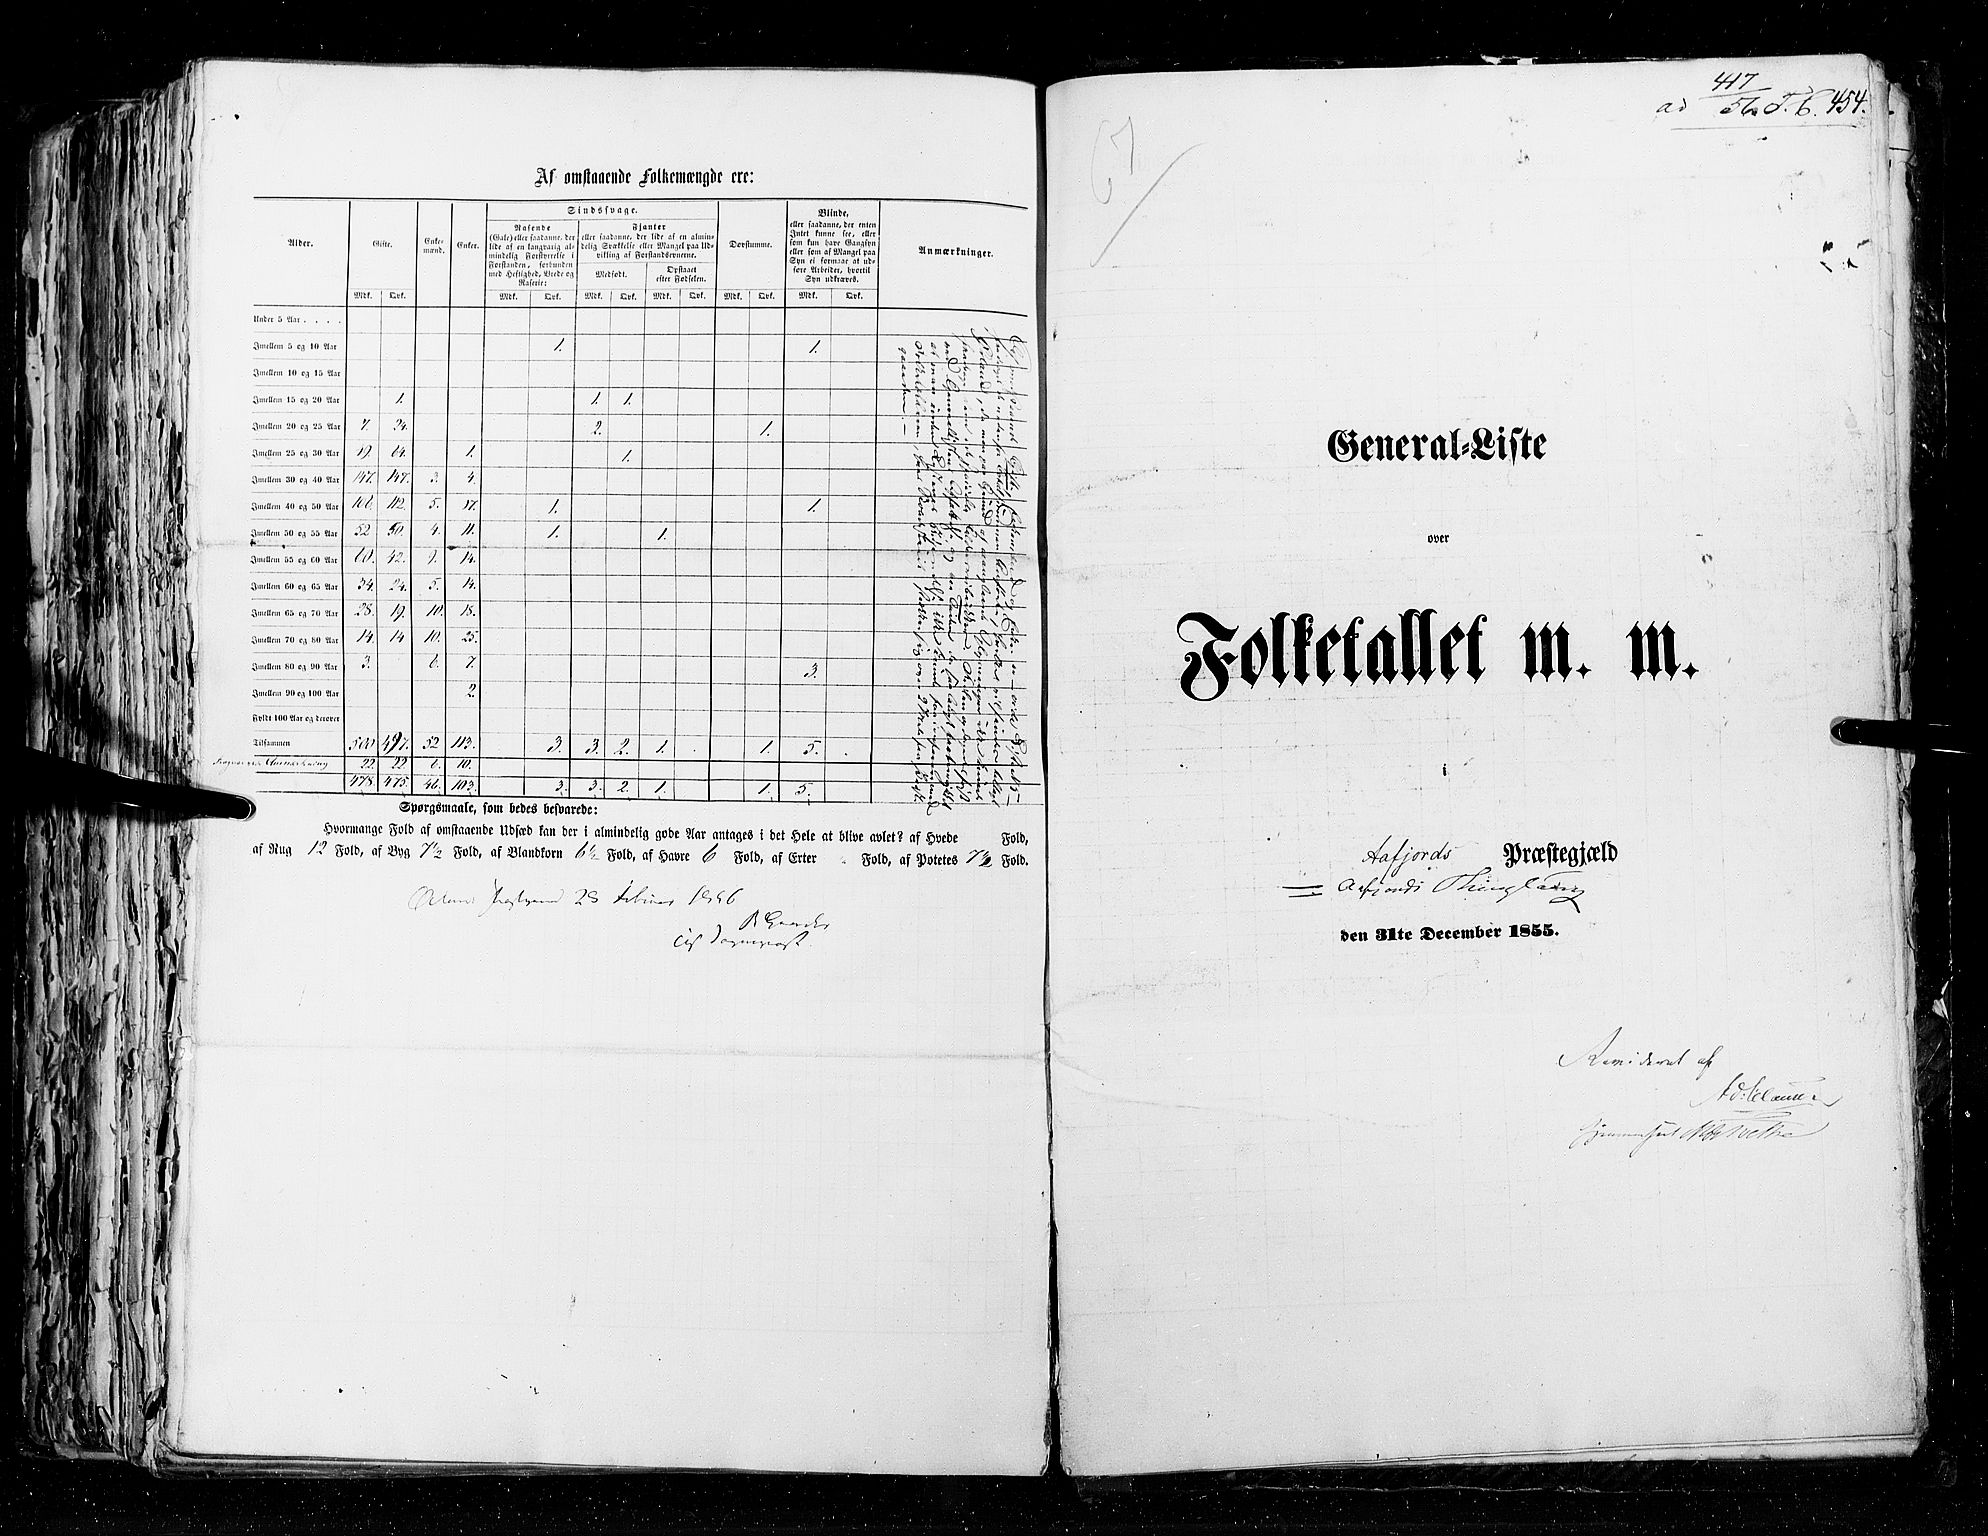 RA, Folketellingen 1855, bind 5: Nordre Bergenhus amt, Romsdal amt og Søndre Trondhjem amt, 1855, s. 454